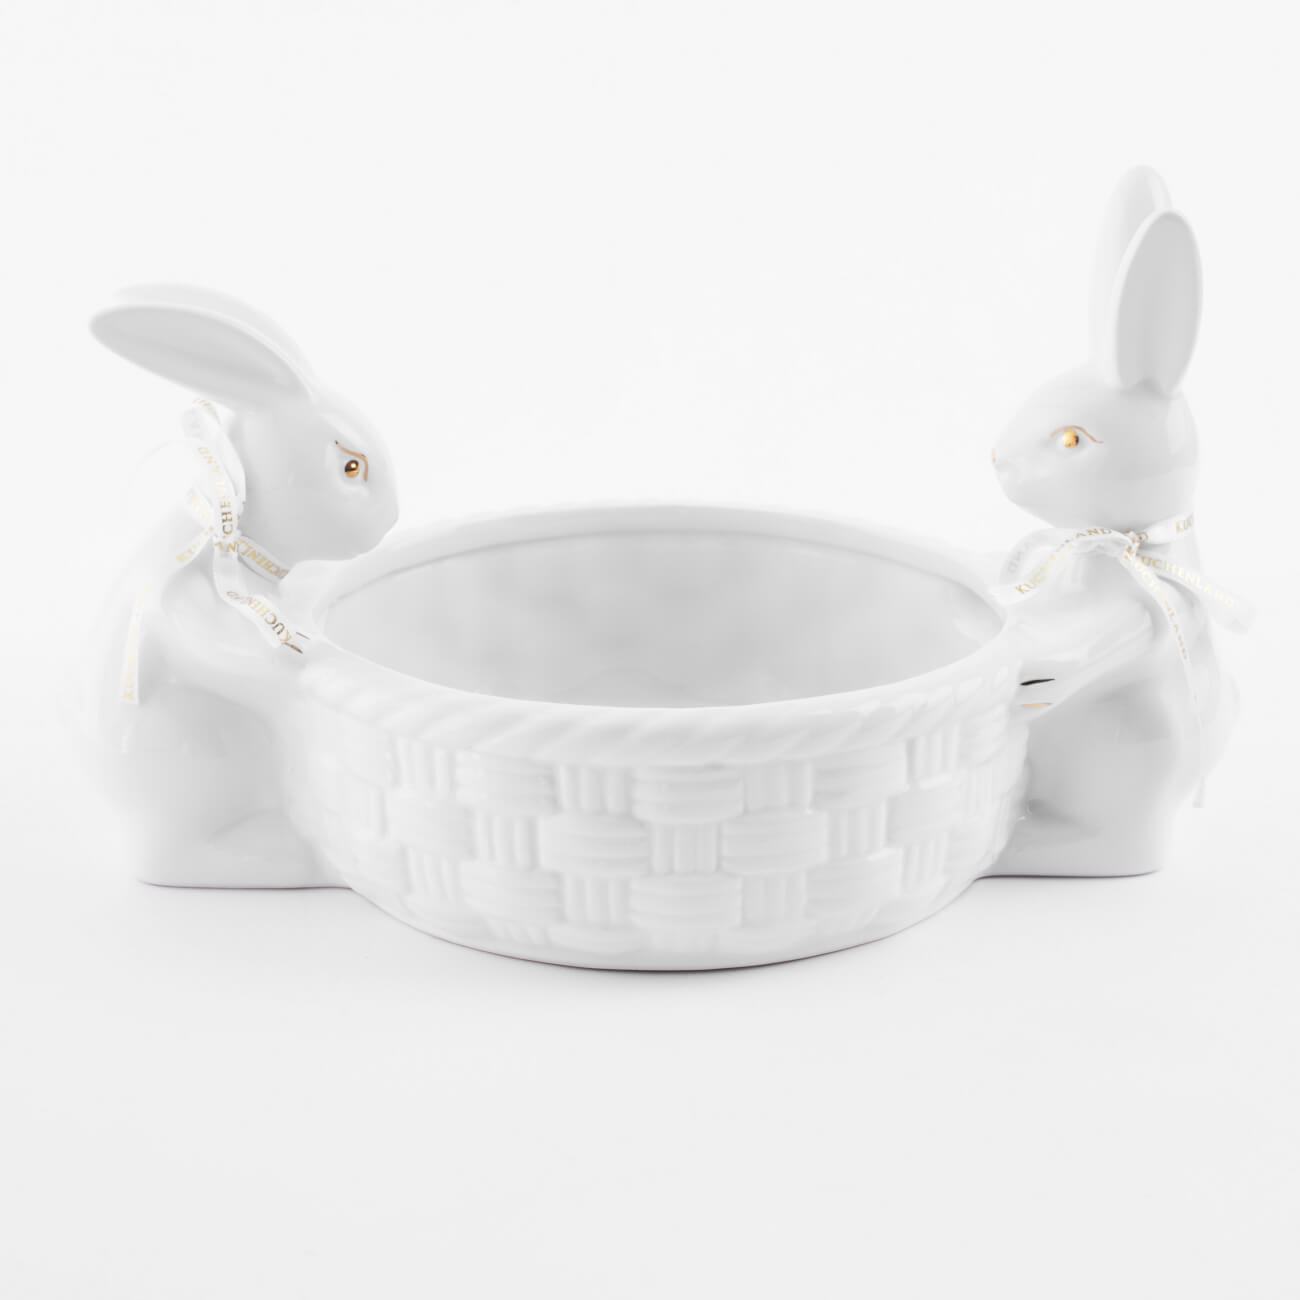 Конфетница, 28х16 см, керамика, бело-золотистая, Кролики с плетенной корзиной, Easter gold